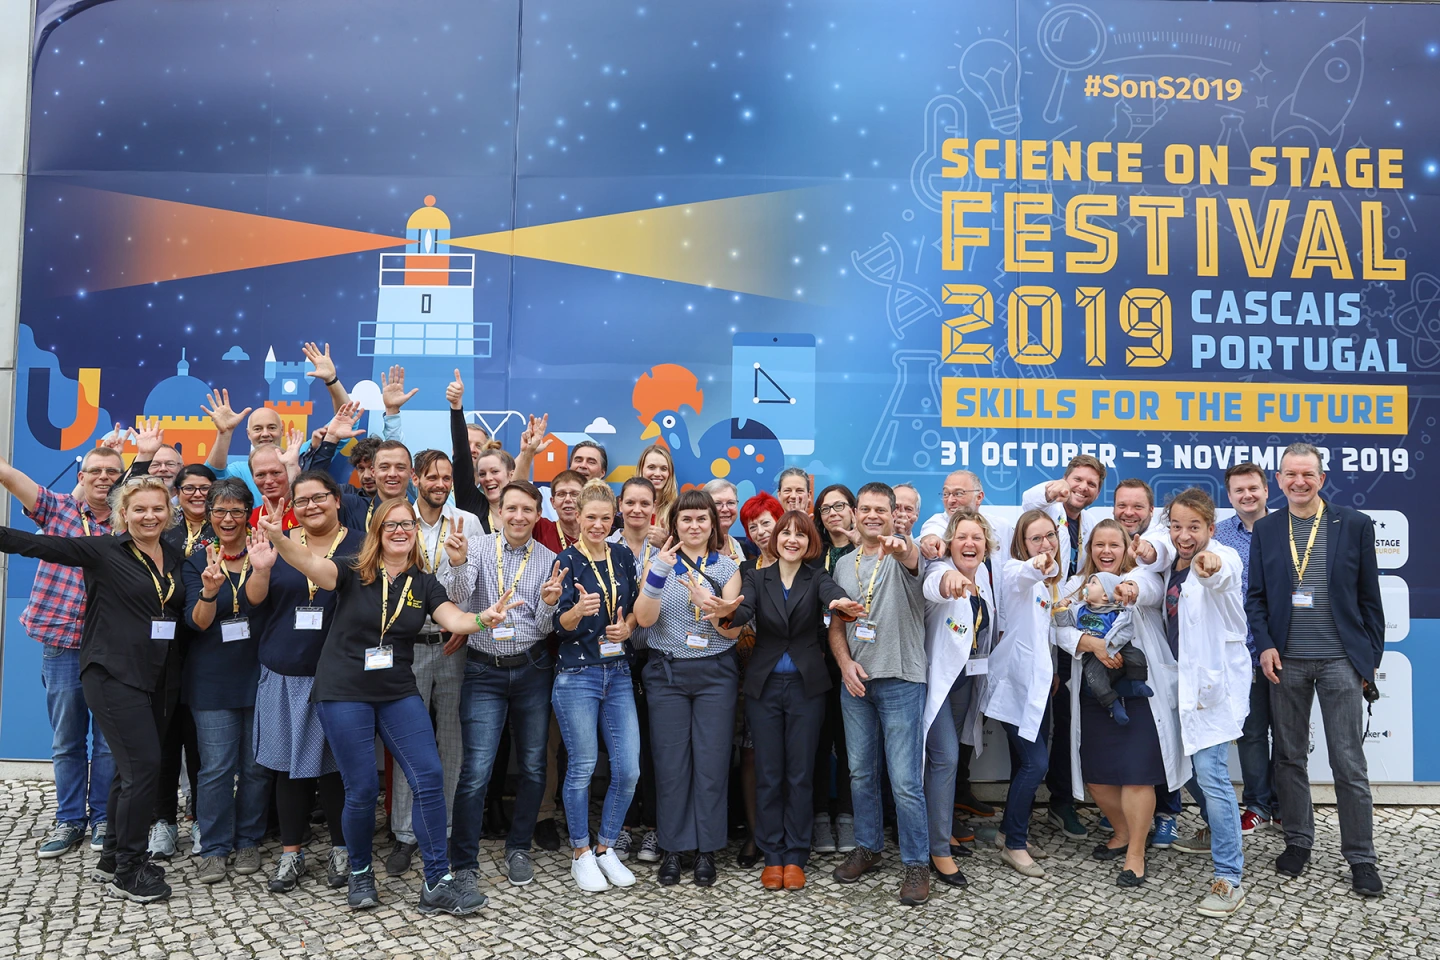 Deutsches Team bei internationalen Science on Stage Festival in Cascais Portugal